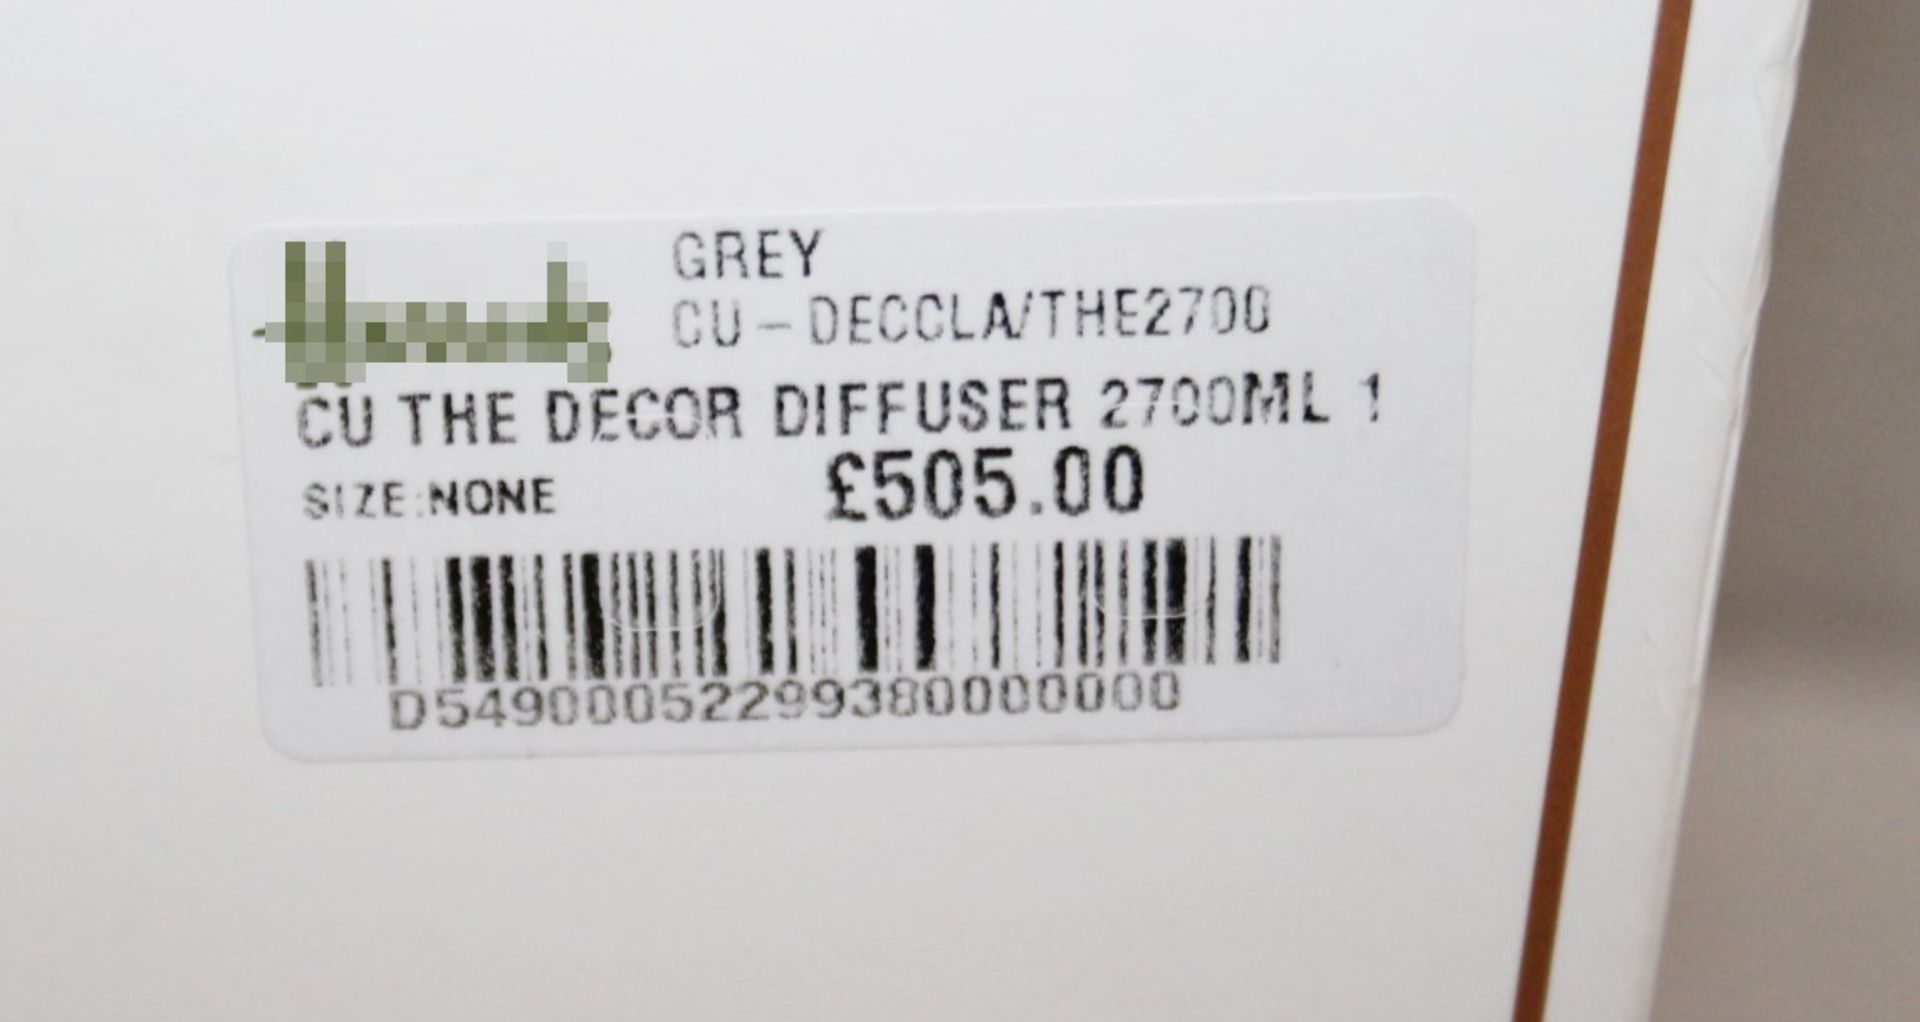 1 x CULTI 'Mareminerale Decor' Home Diffuser 2700ml - Original Price £505.00 - Unused Boxed - Image 3 of 5